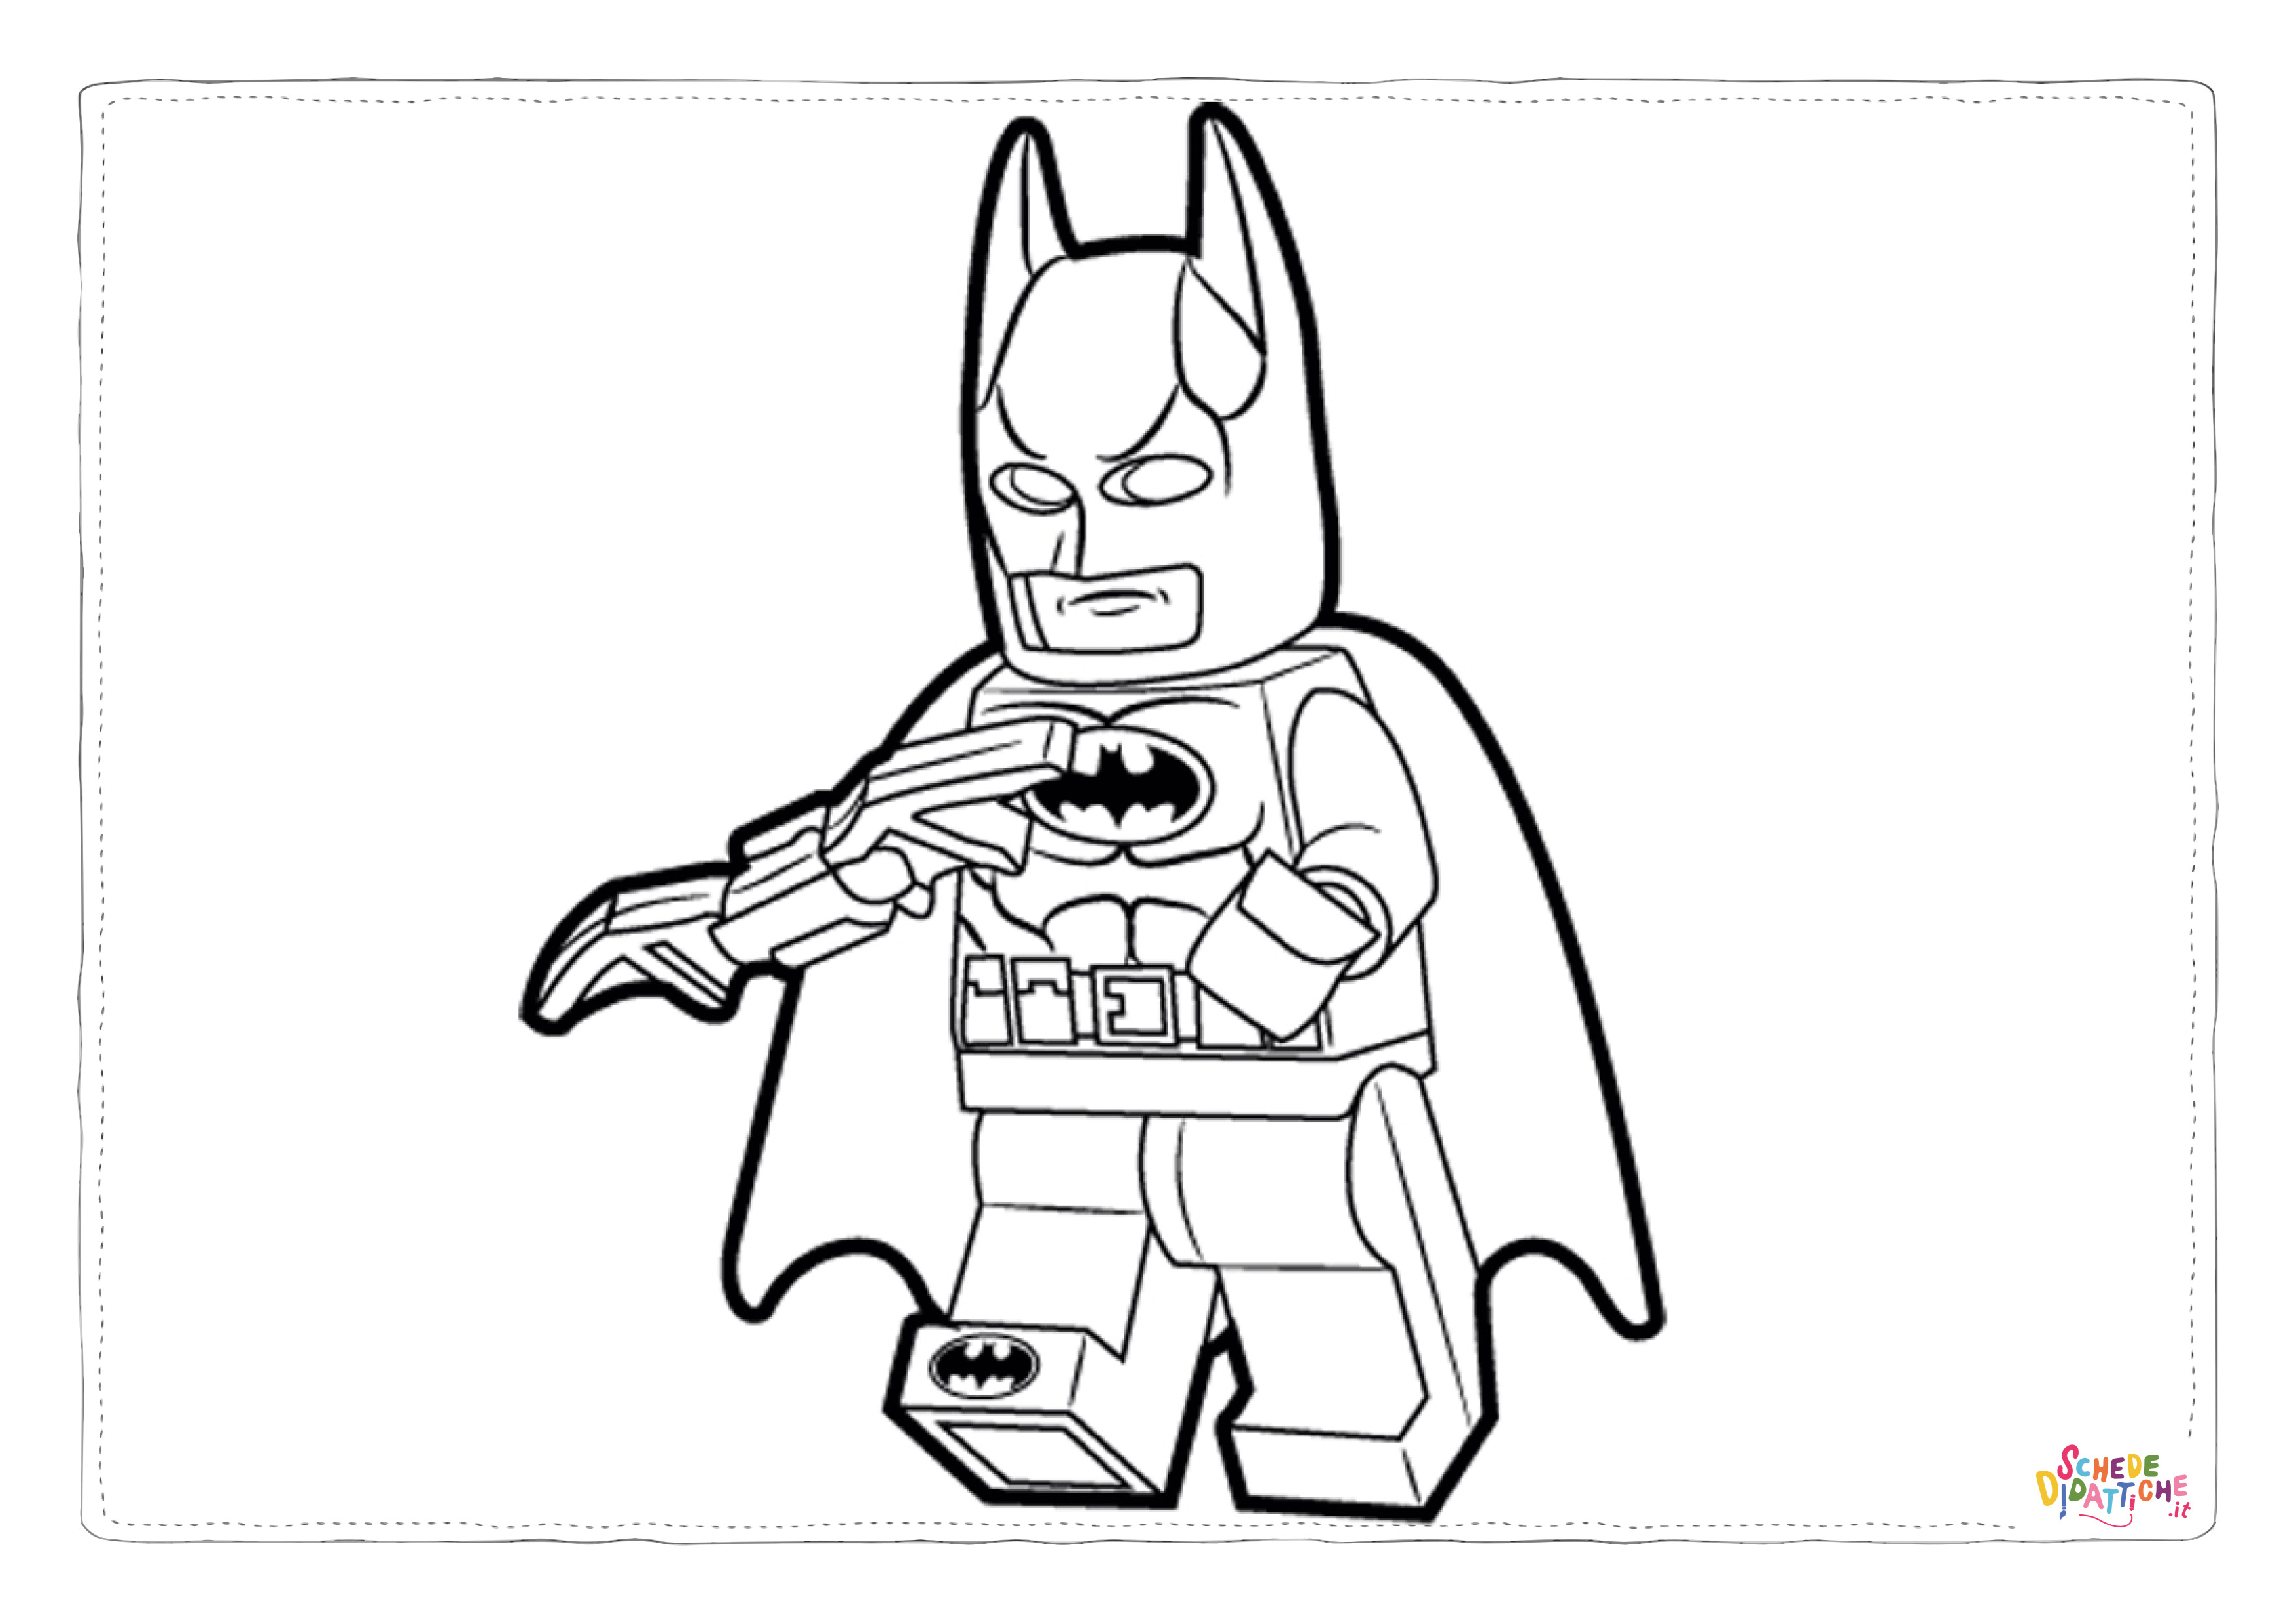 Disegno di LEGO Batman da stampare e colorare